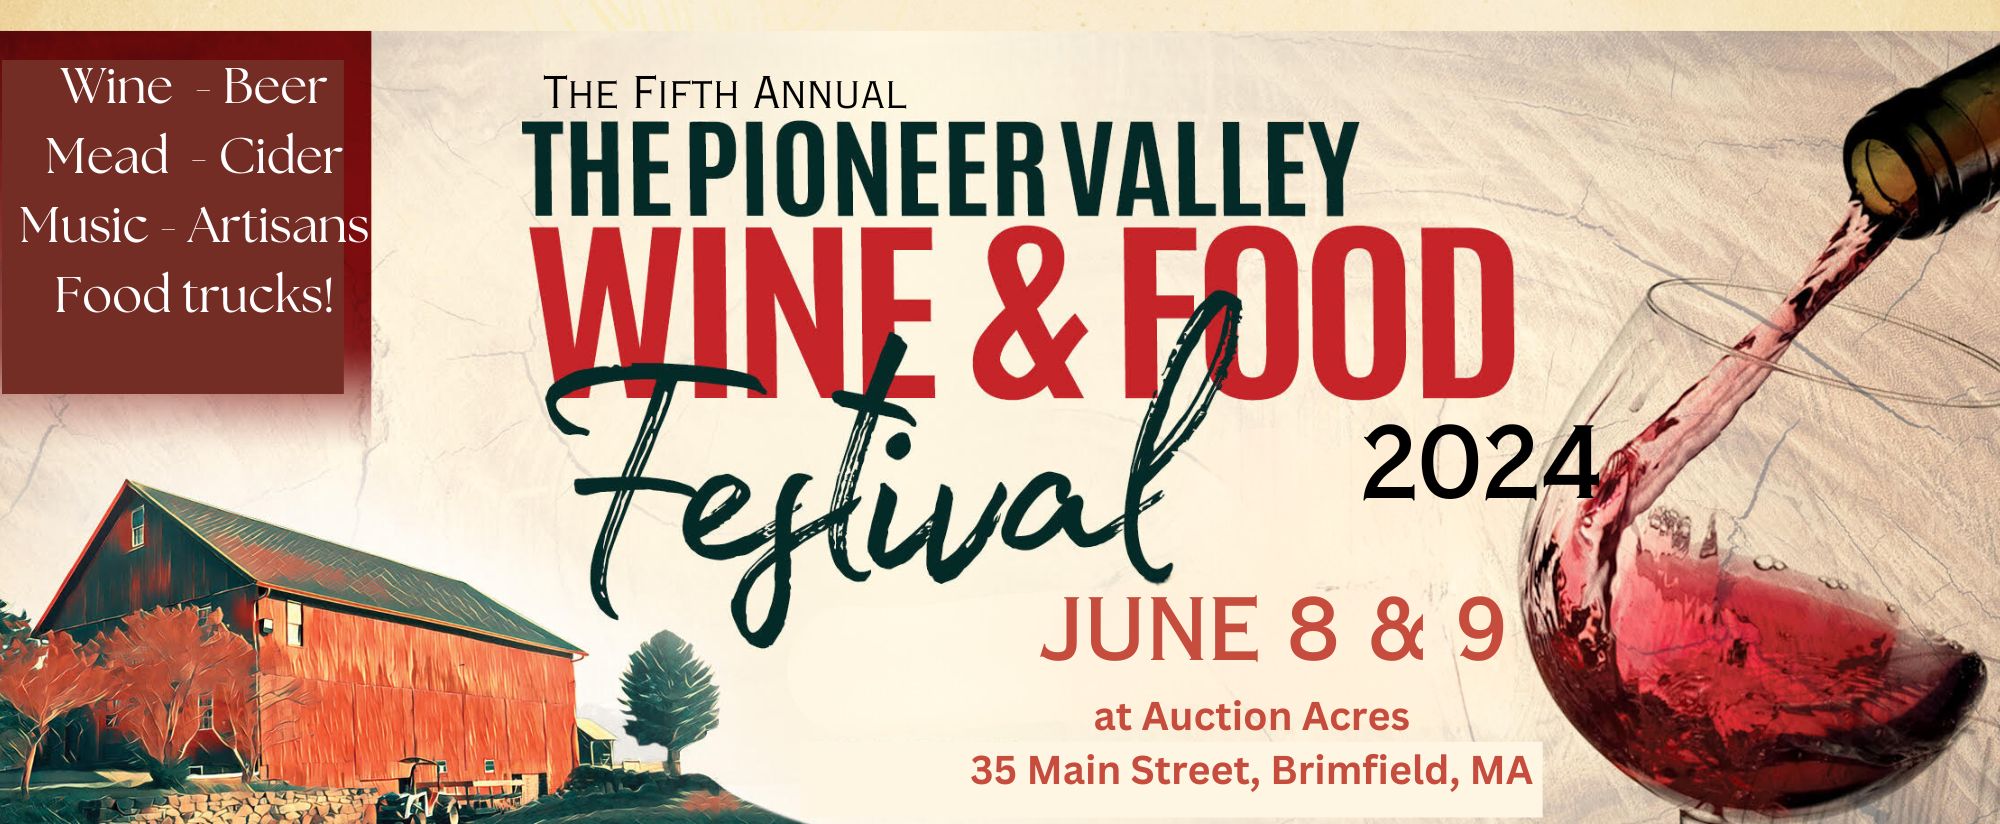 Pioneer Valley Wine & Food Festival Saturday June 8, 2024